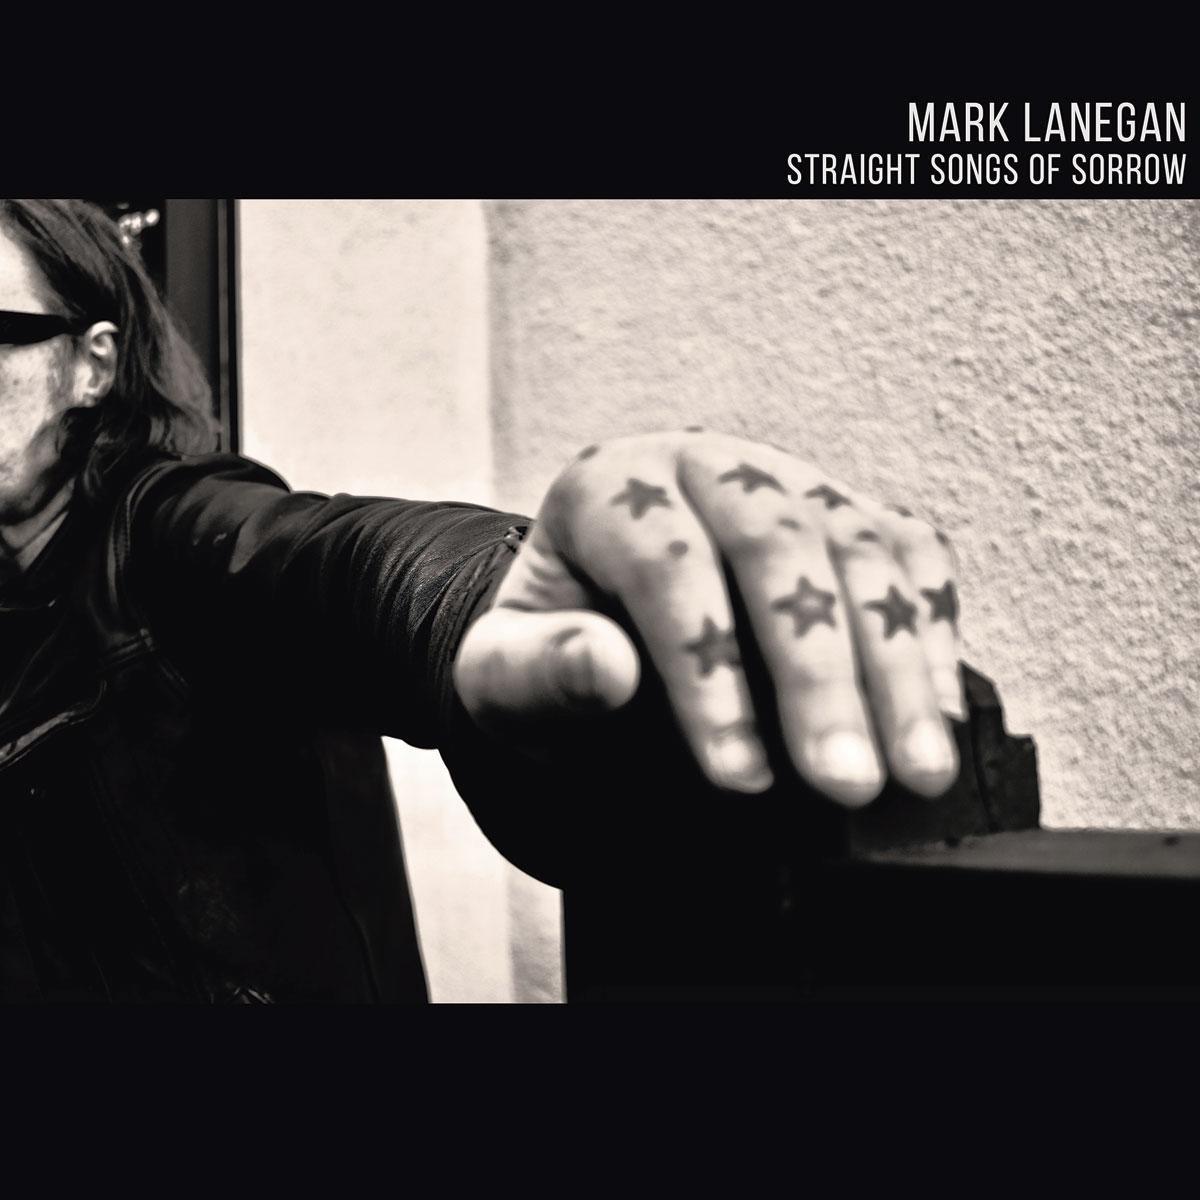 Mark Lanegan doorploetert berouw en schuld op 'Straight Songs of Sorrow'